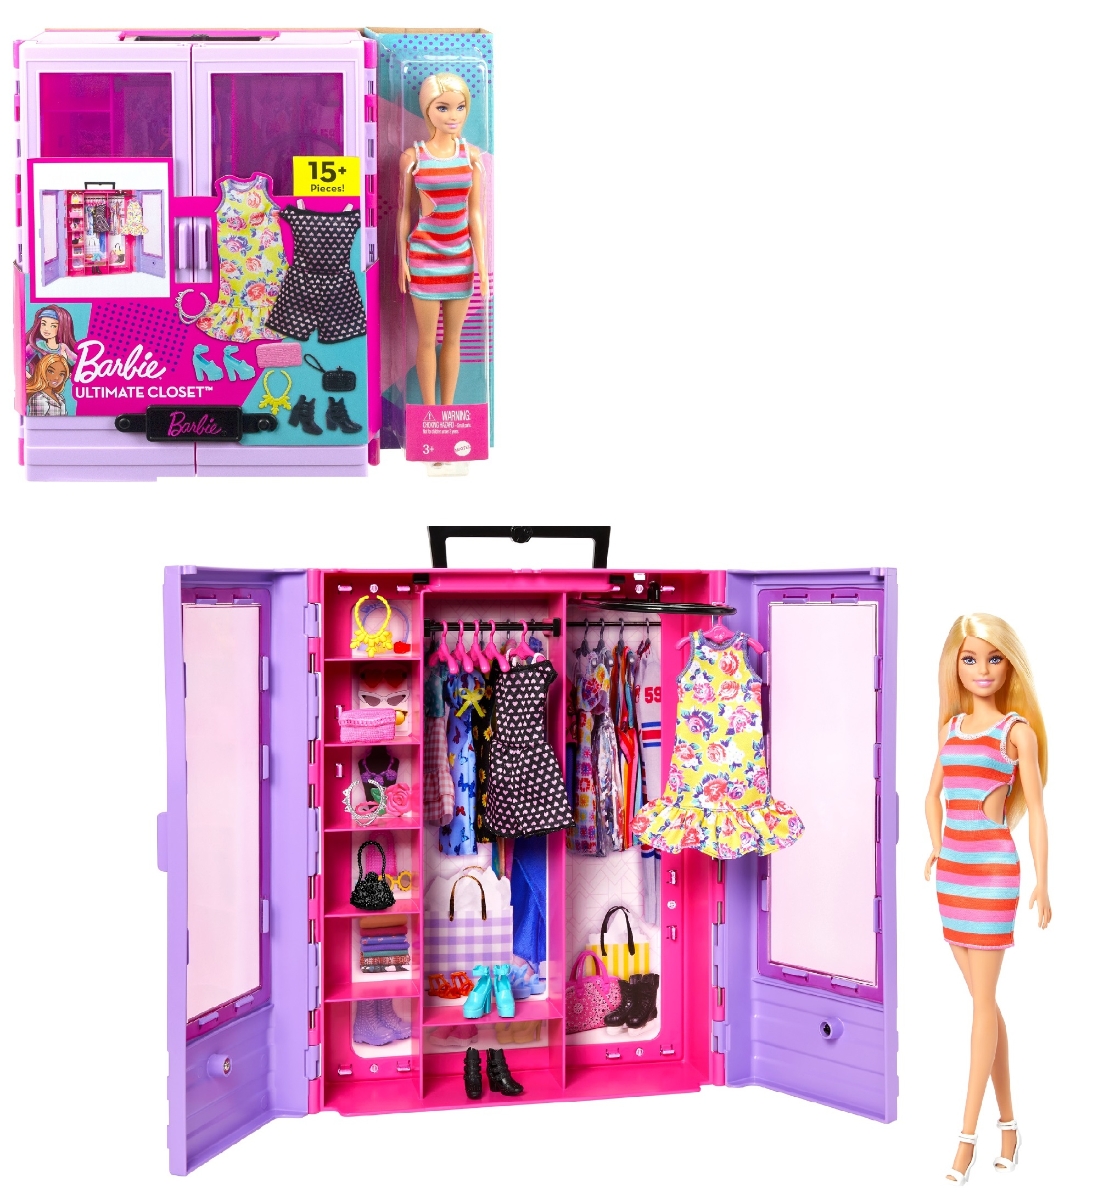 バービー(Barbie) バービーとパープルのクローゼット コーディネートいろいろ！ドール＆ファッションセット 【バービー人形】【着せ替え人形】　【ドール&アクセサリー】 【3才~】 HJL66画像